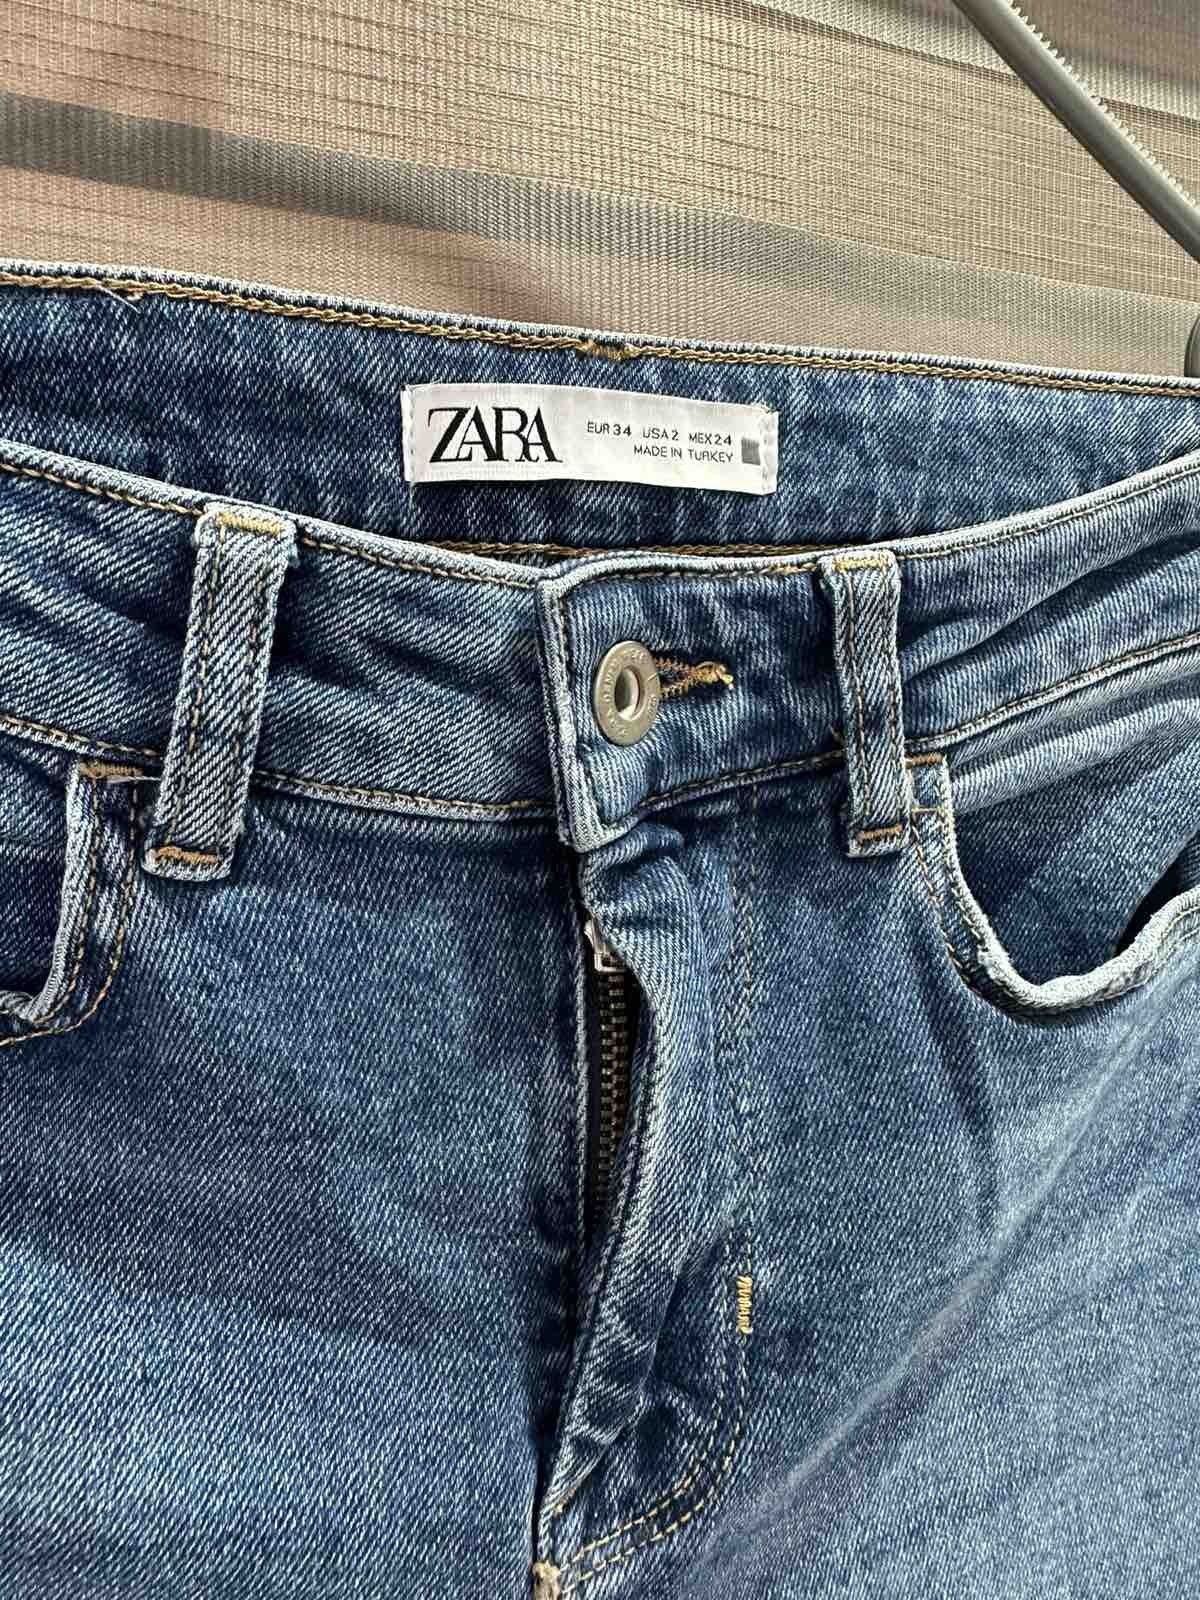 Spodnie Zara plus koszulka xs/s